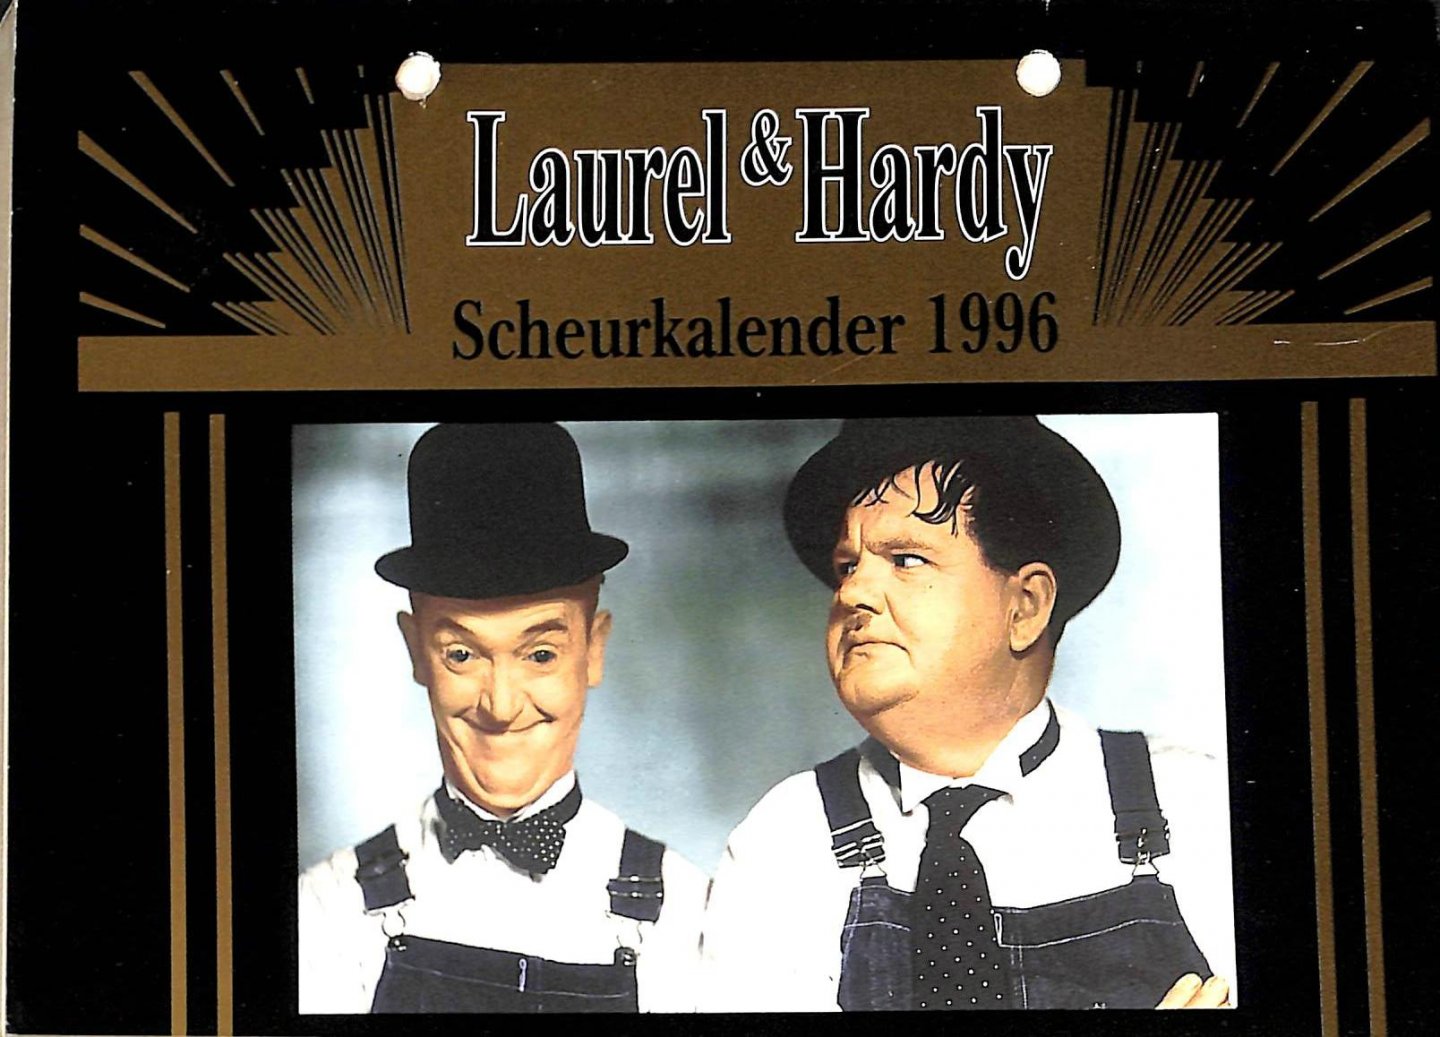  - Laurel & Hardy scheurkalender 1996